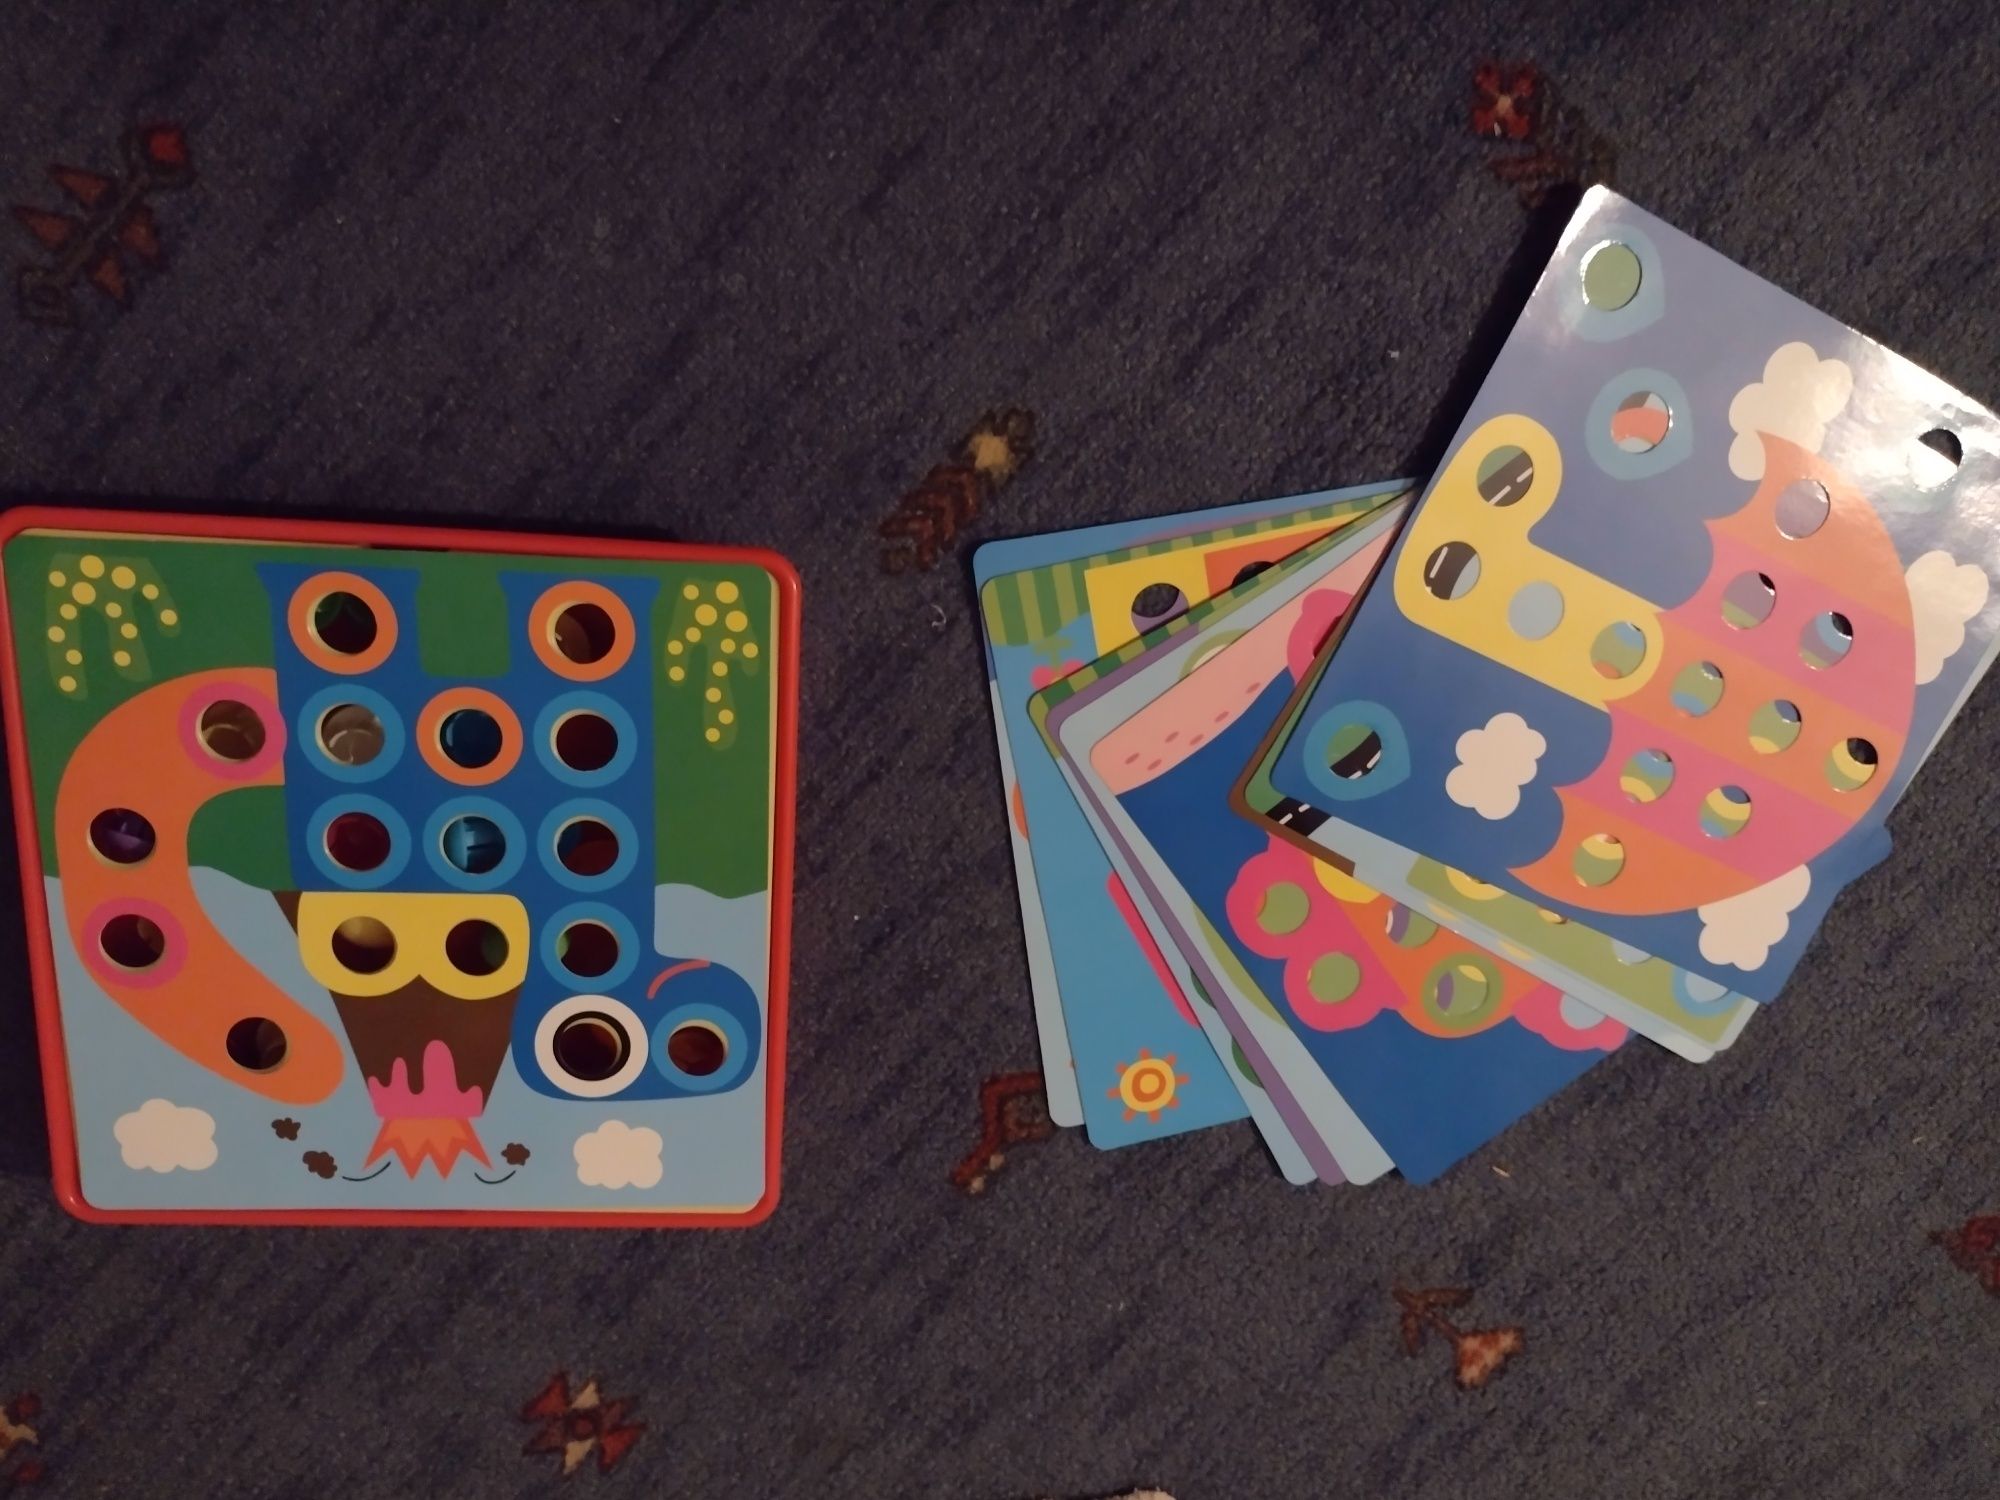 układanka guzikowa edukacyjna mozaika Montessori